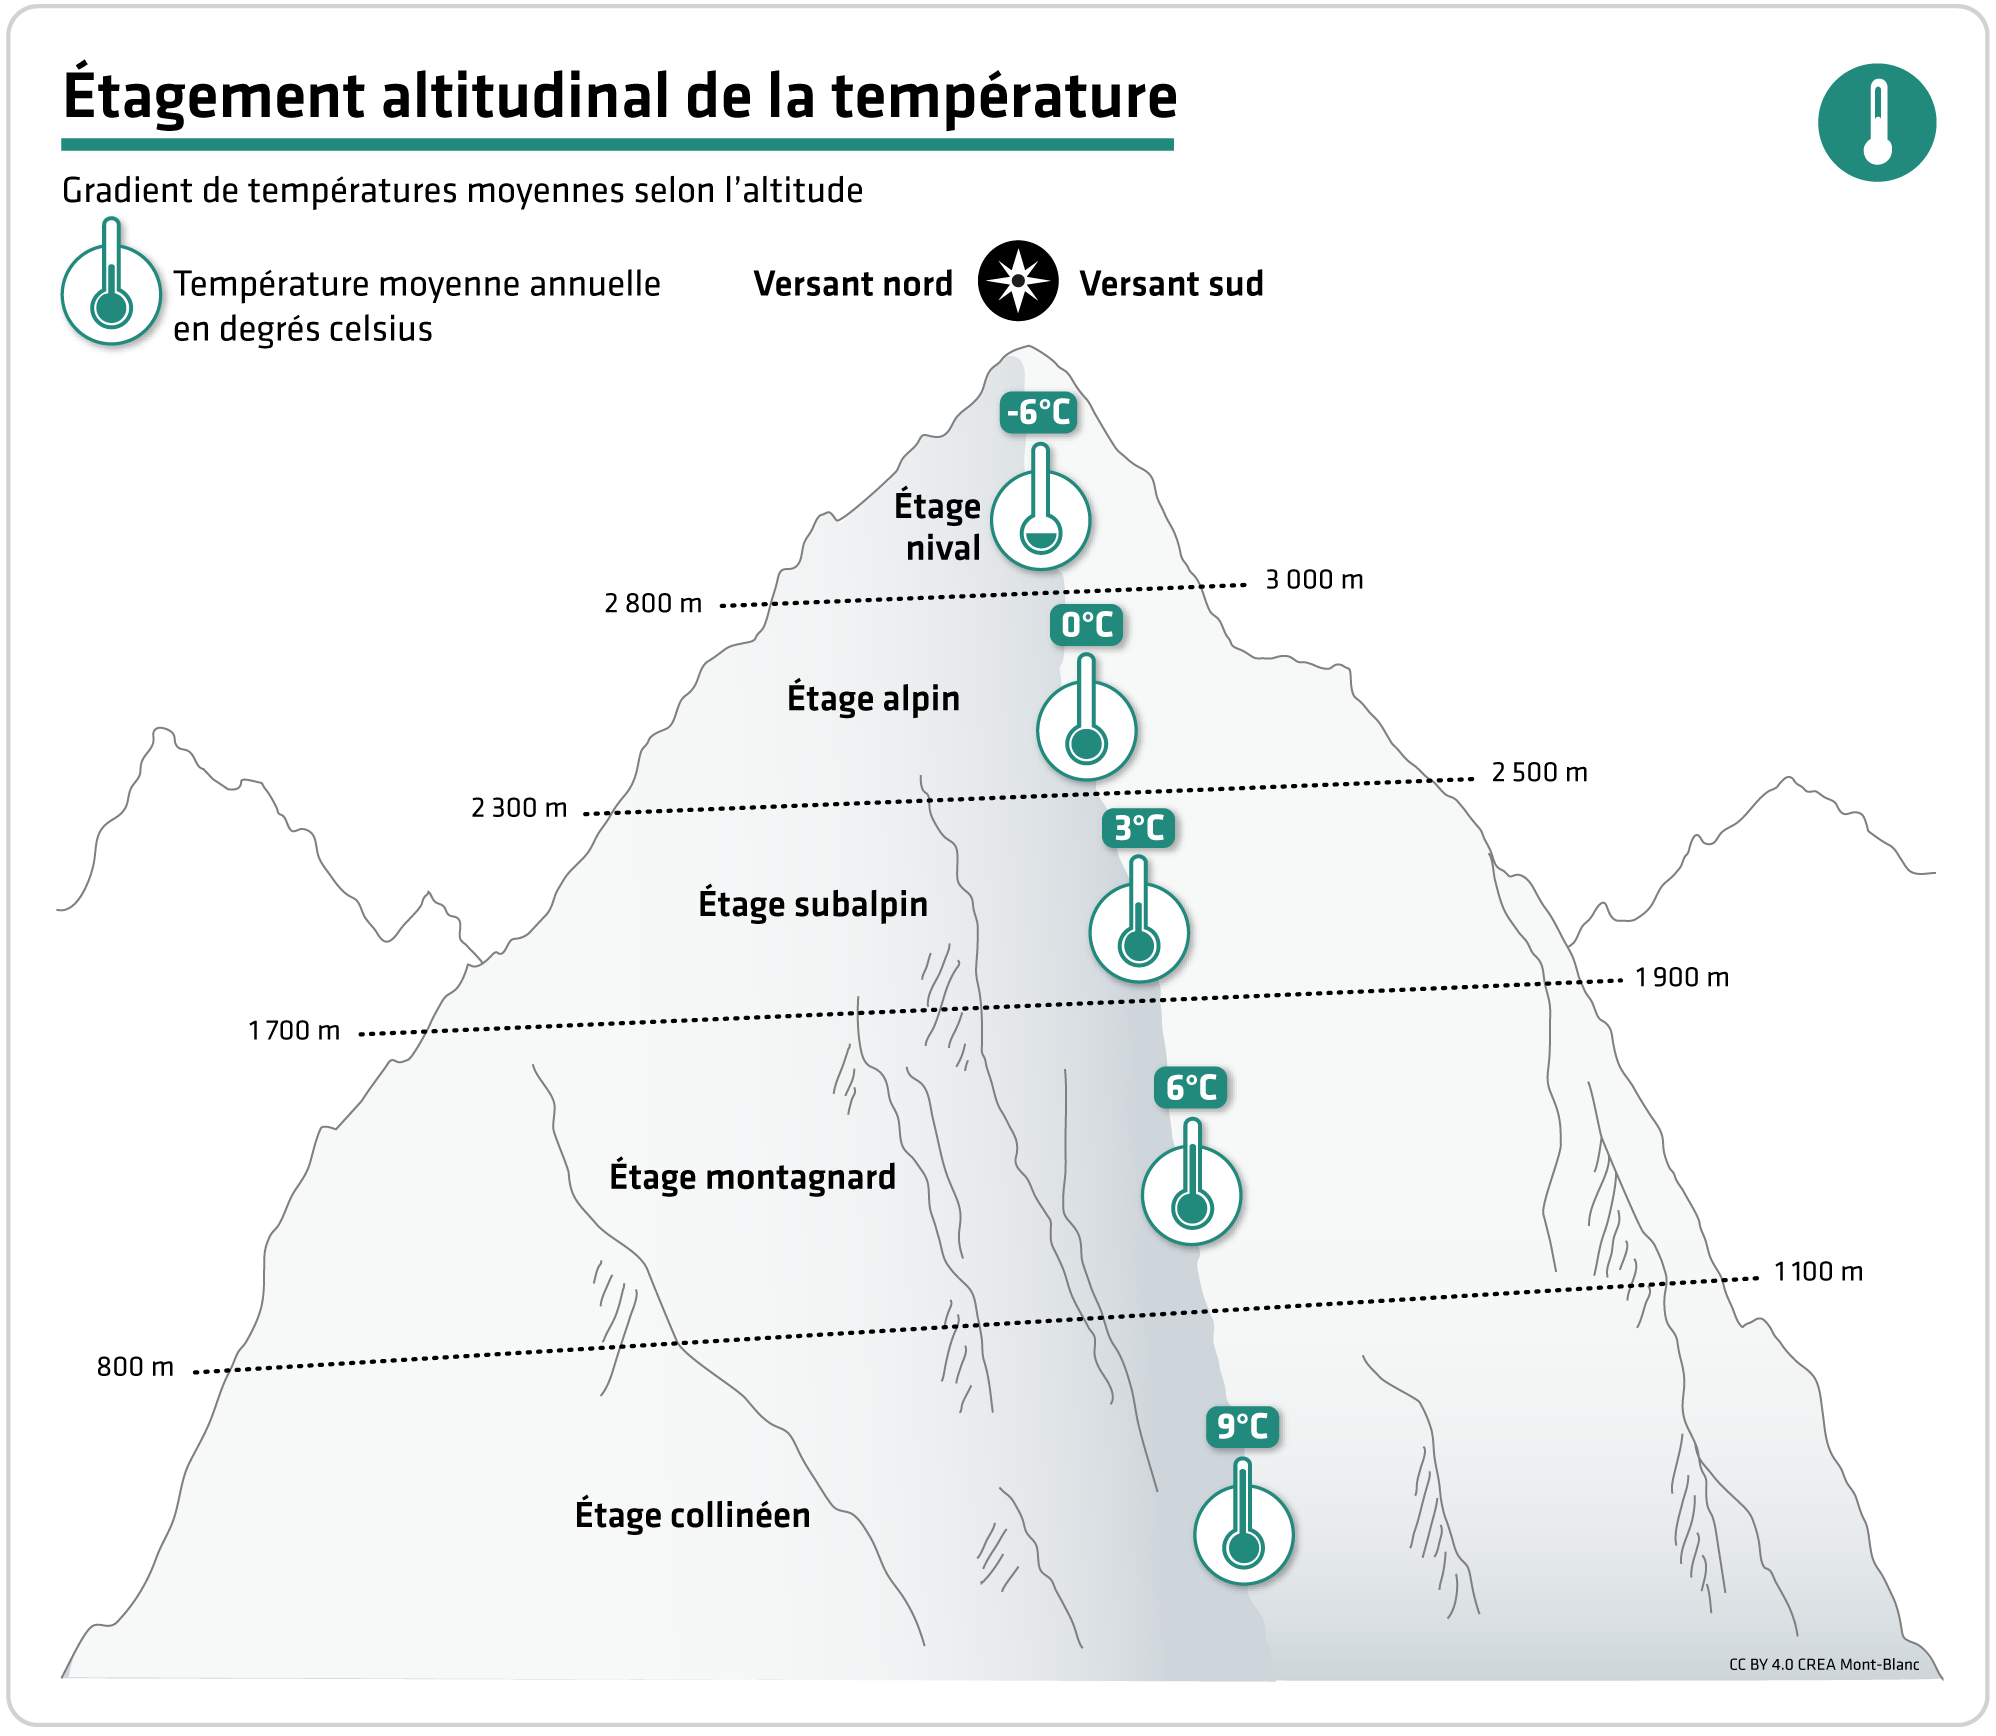 Gradient de températures moyennes selon l'altitude